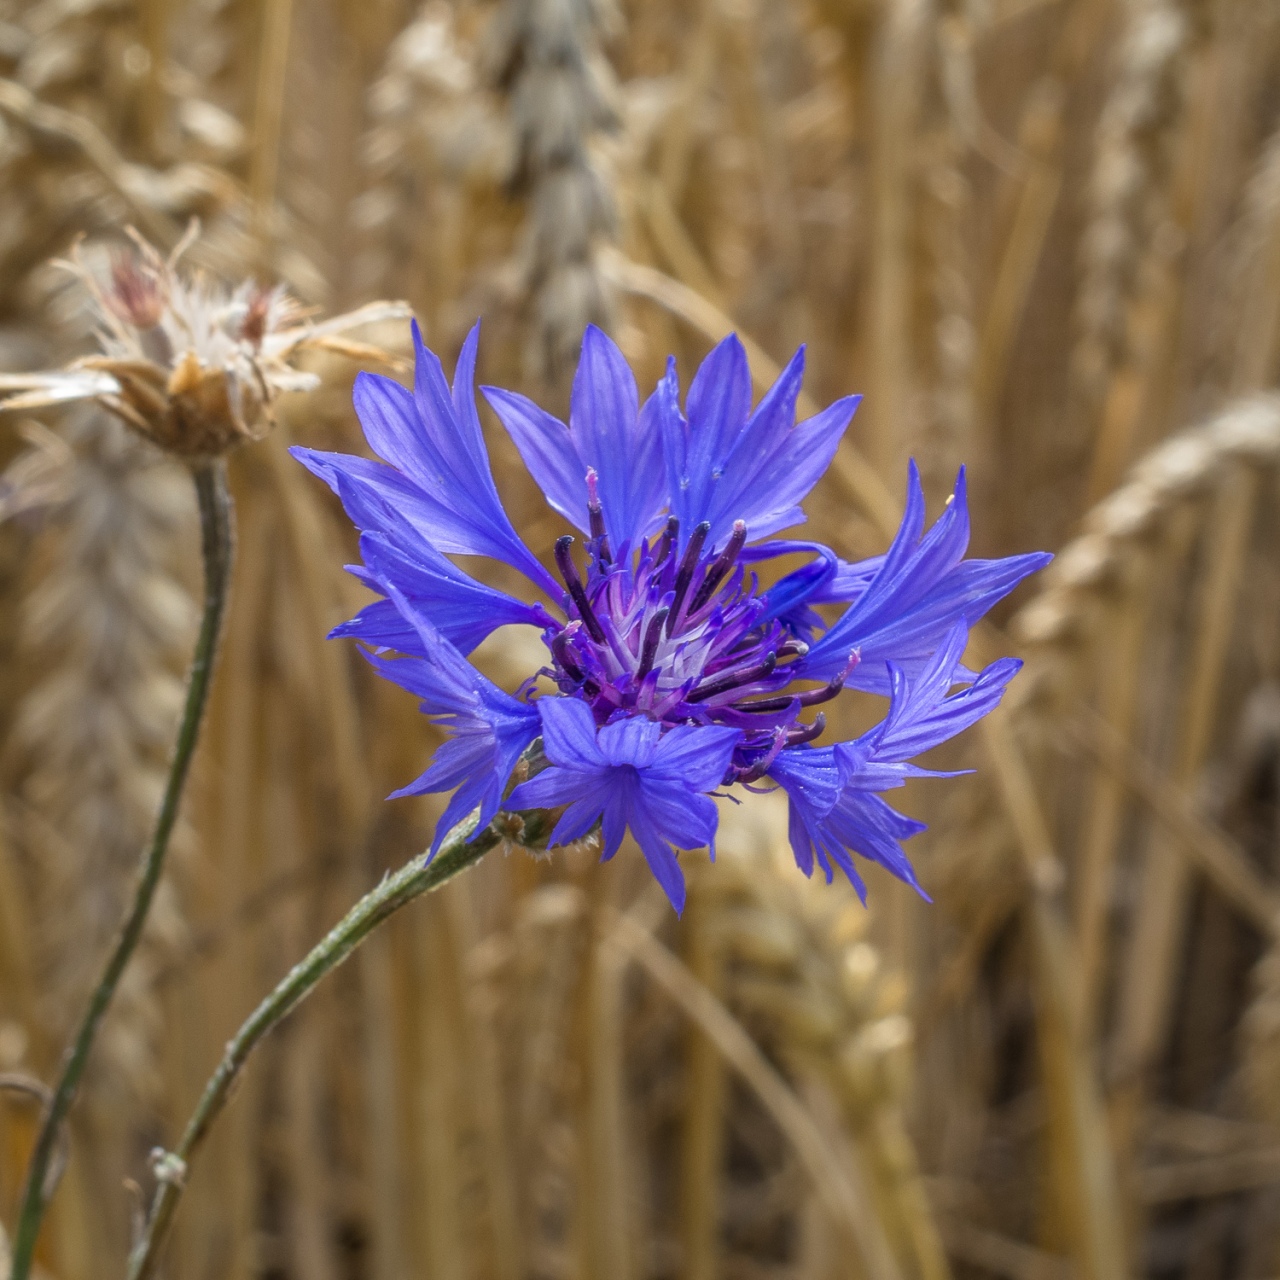 Leuchtend blaue Blüte einer Kornblume im Getreidefeld